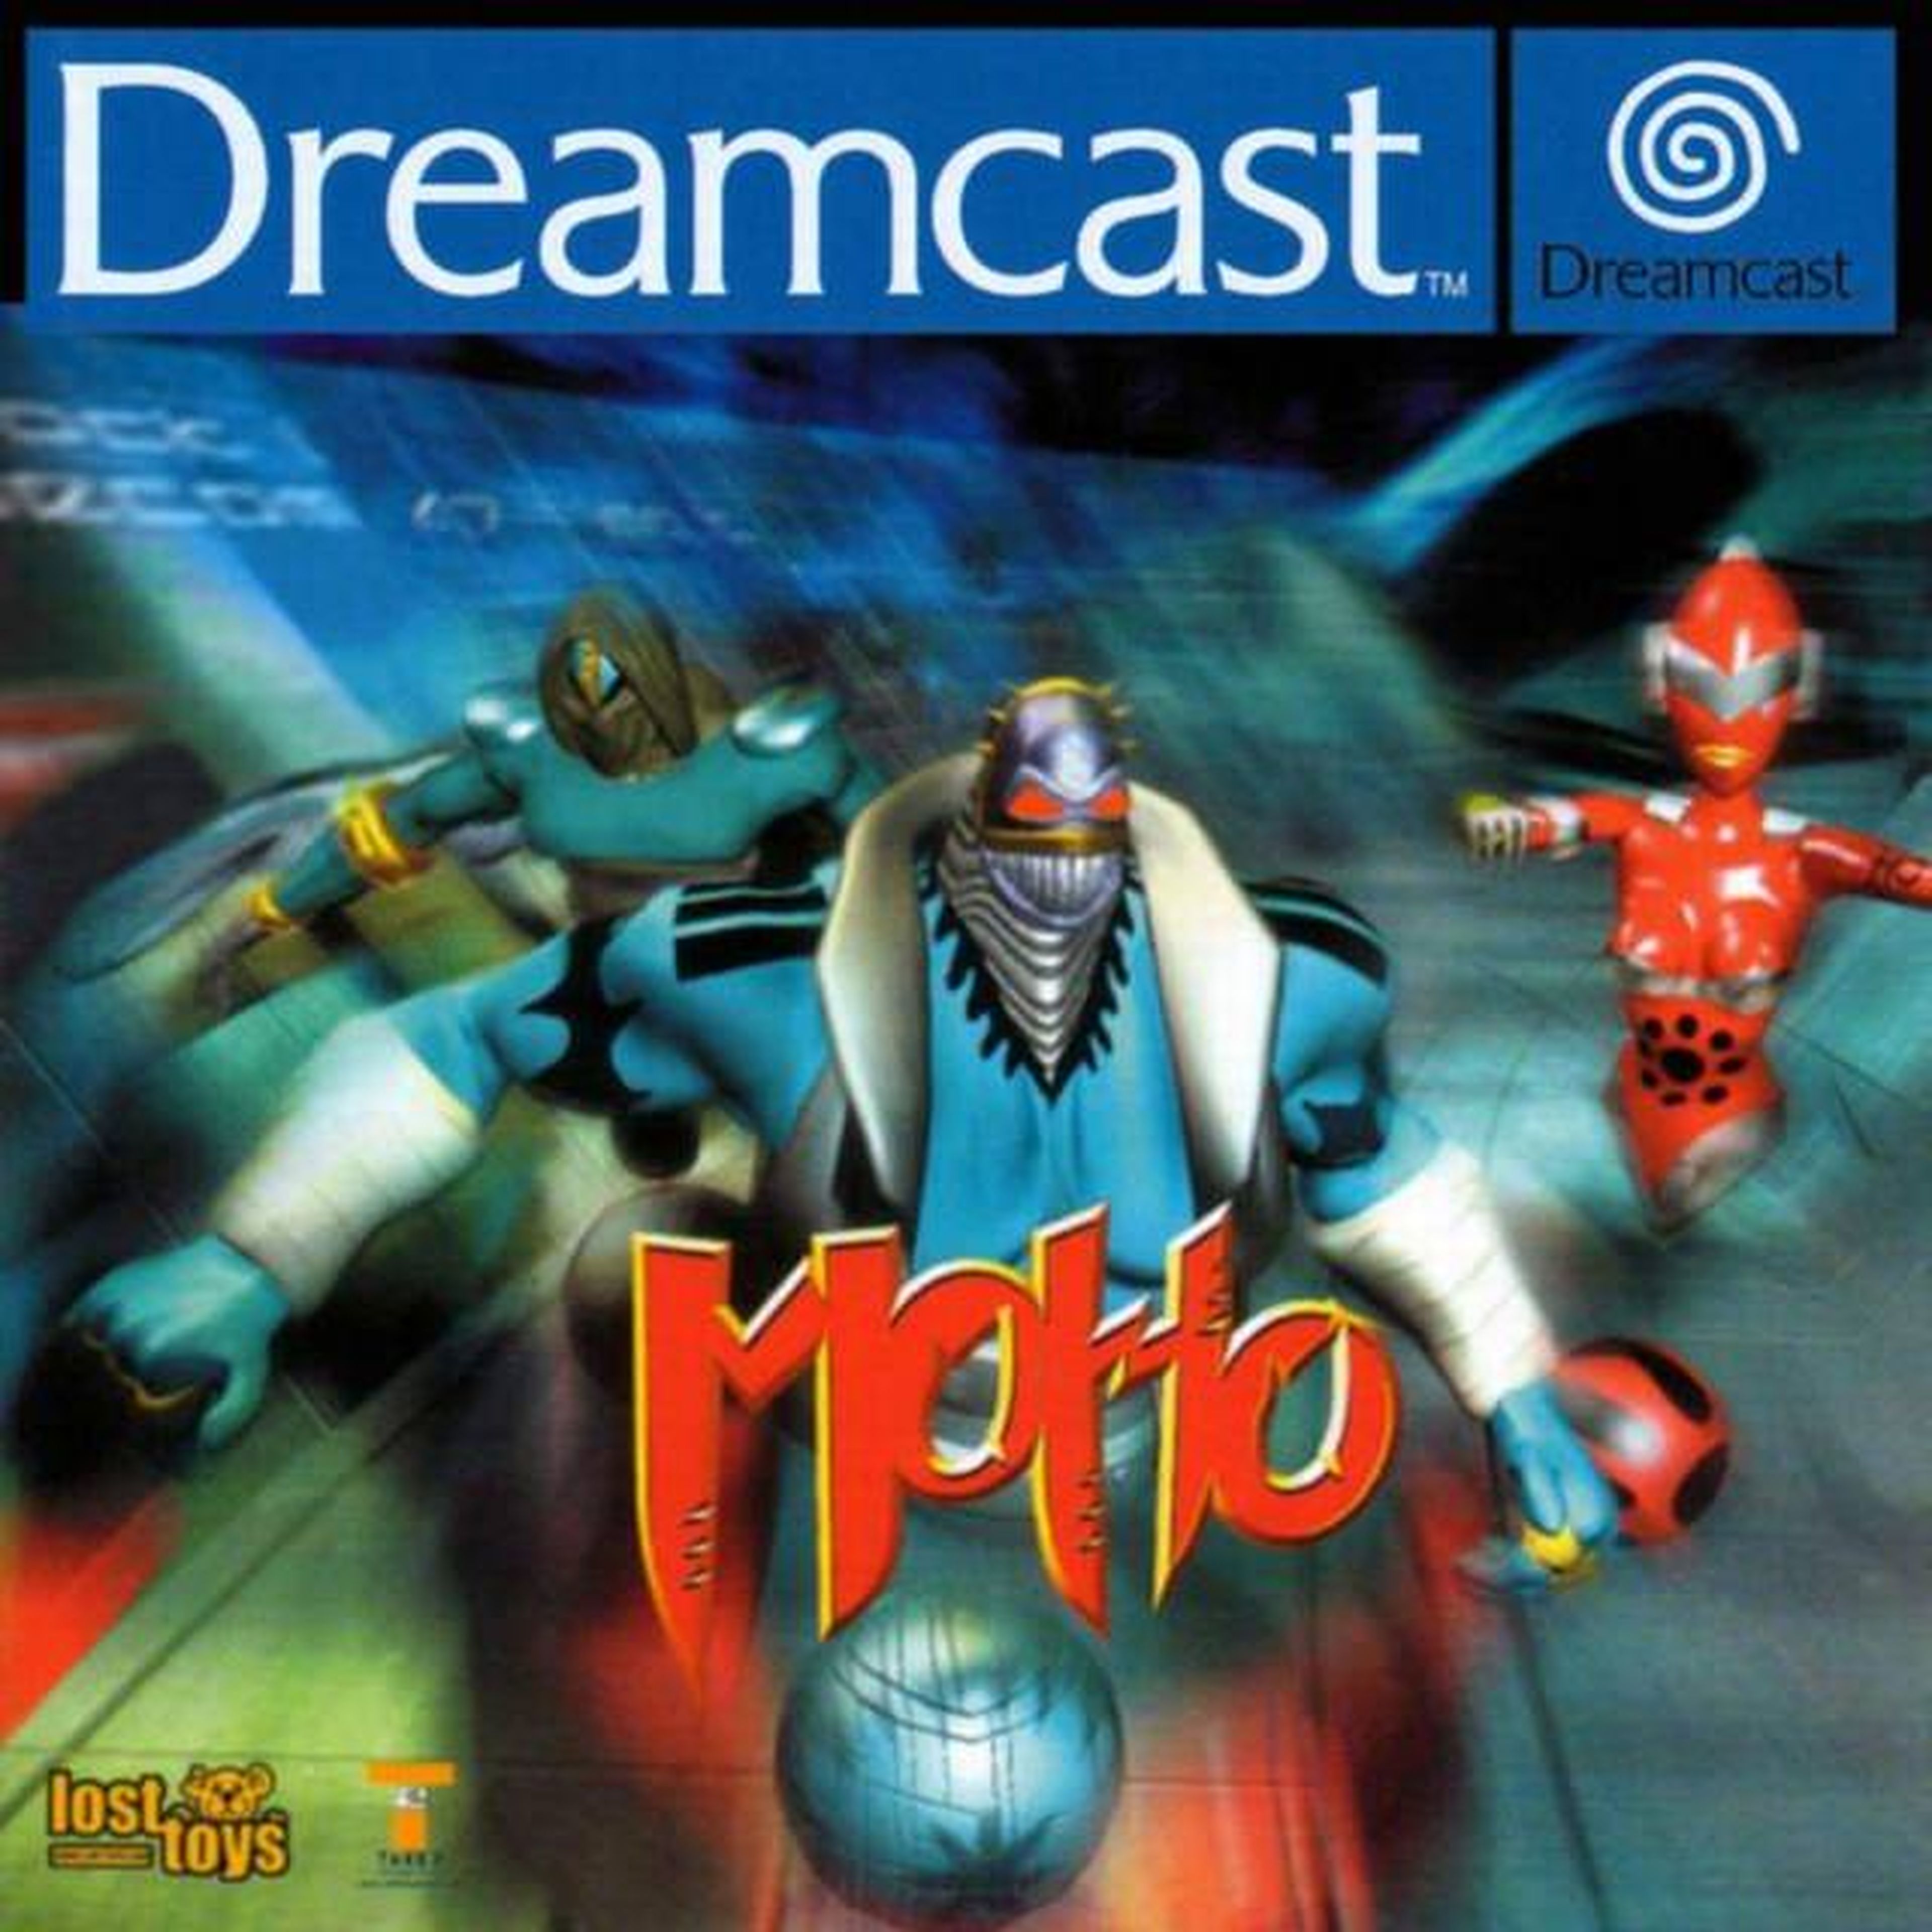 Las 10 peores carátulas de Dreamcast